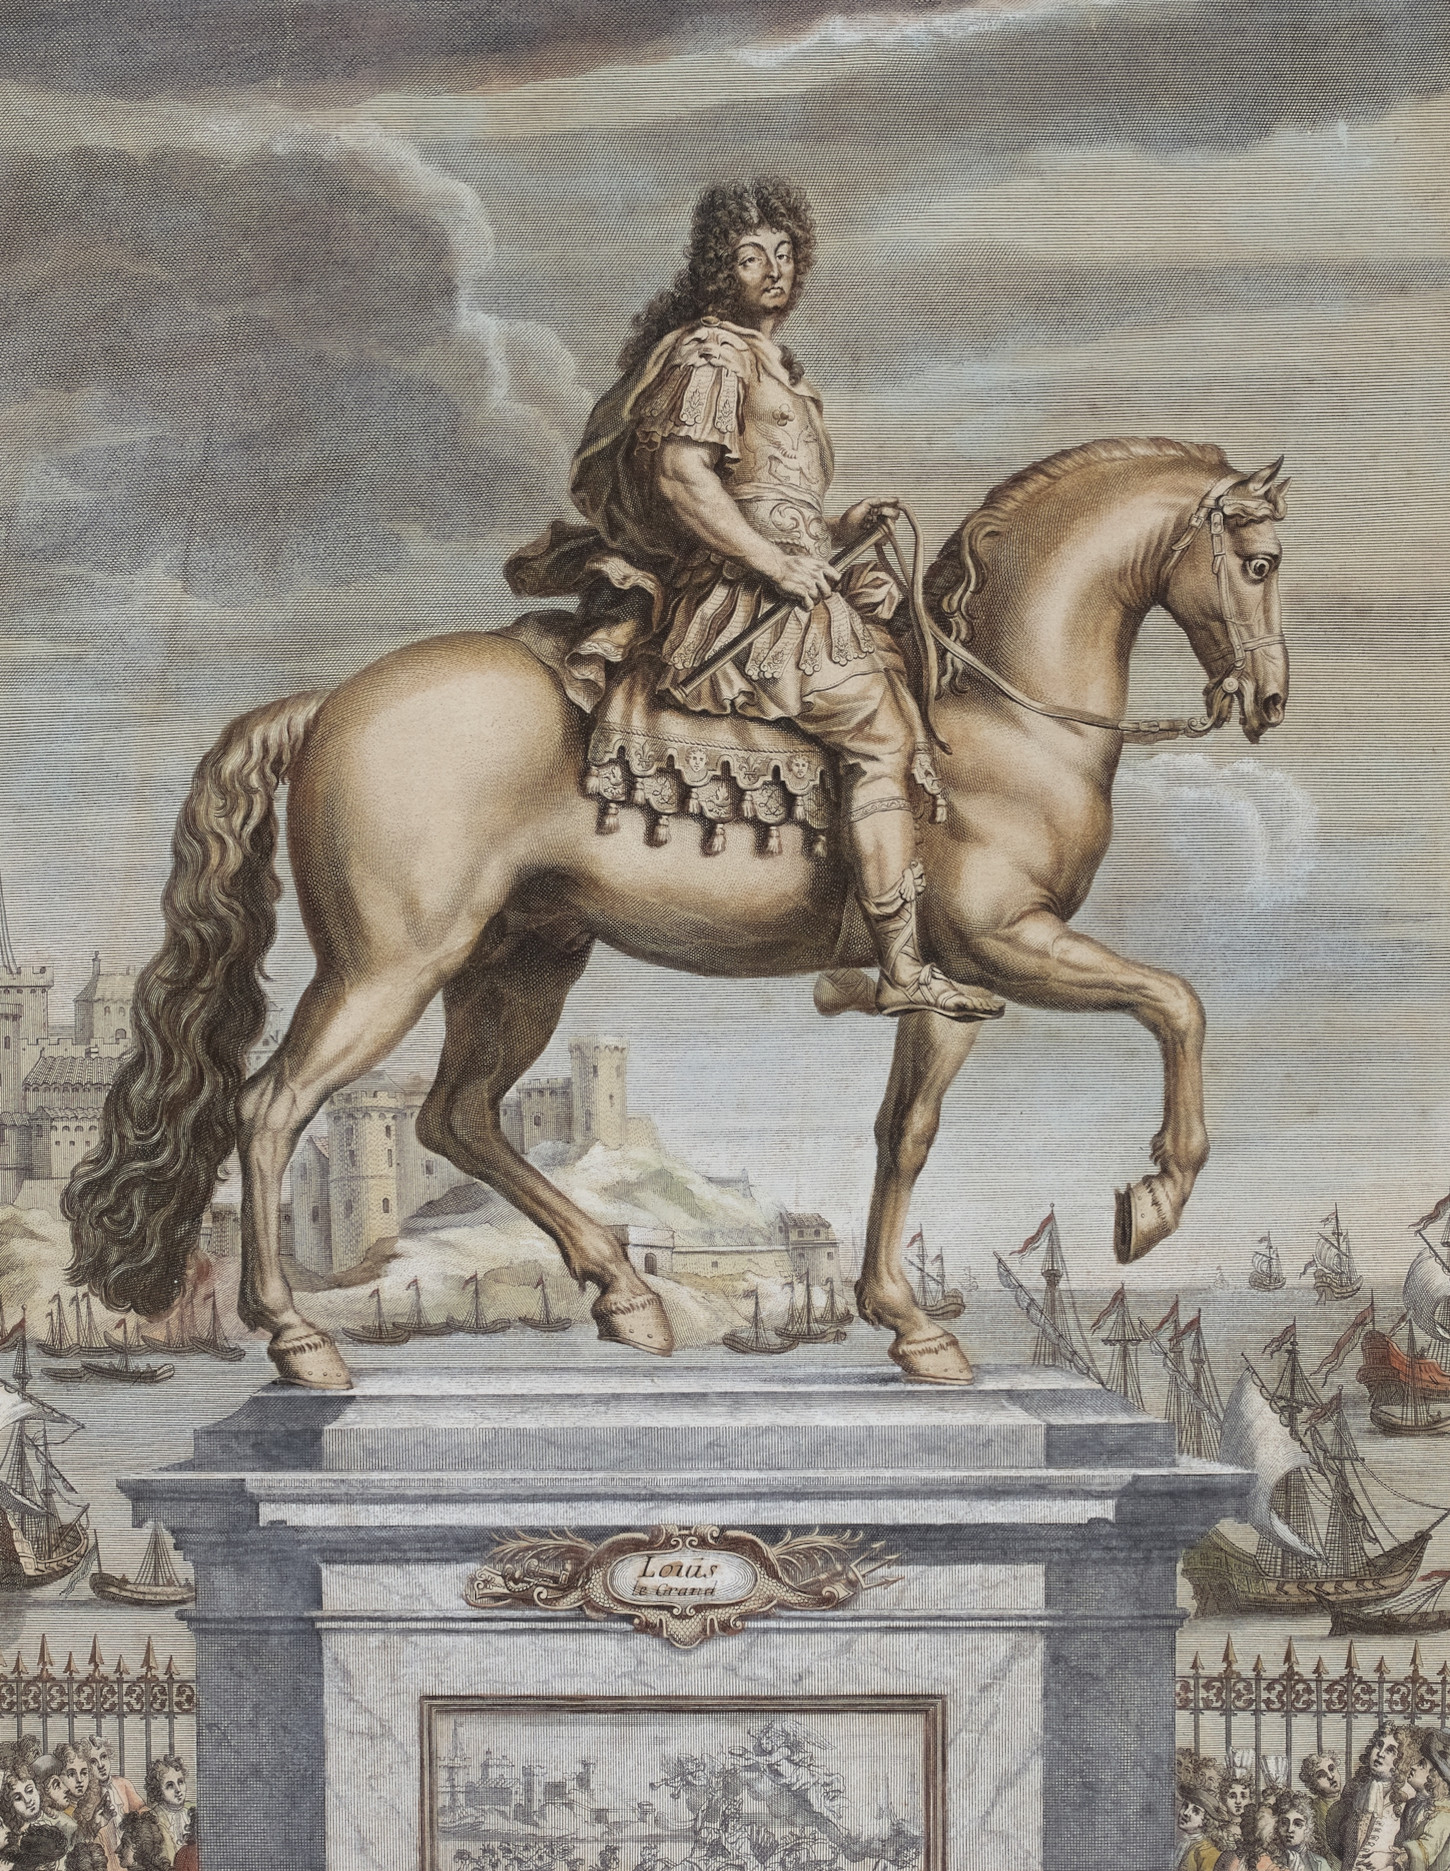 Delwenn Loeiz XIV gant Antoine Coysevox (1640 - 1720). Mirdi Breizh : 956.0002.242.